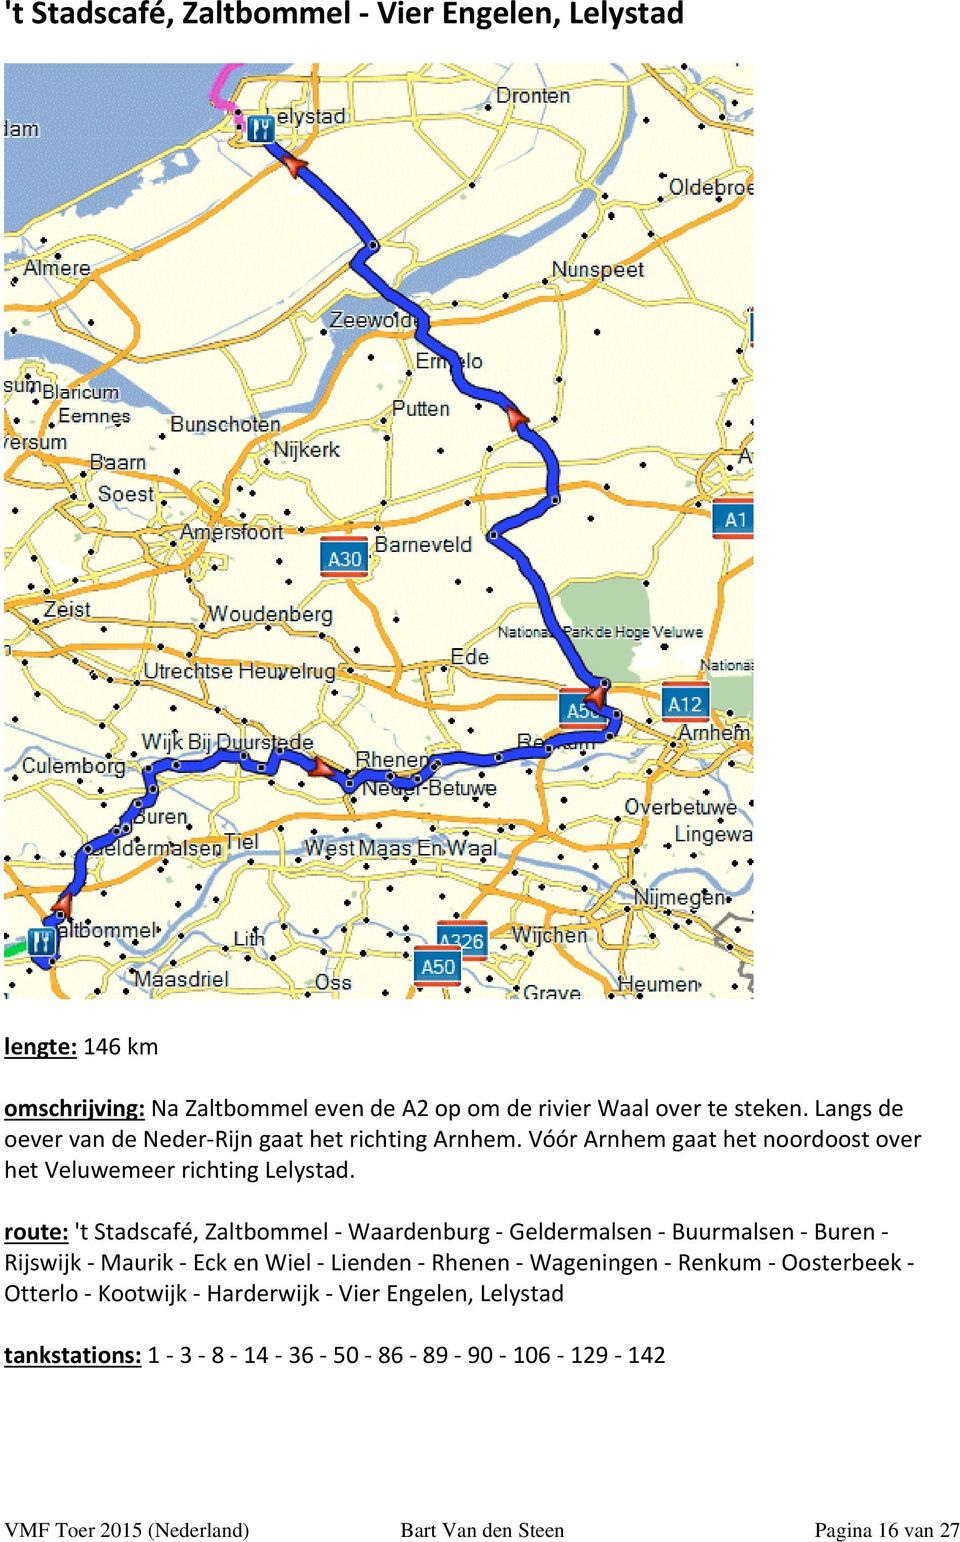 route: 't Stadscafé, Zaltbommel Waardenburg Geldermalsen Buurmalsen Buren Rijswijk Maurik Eck en Wiel Lienden Rhenen Wageningen Renkum